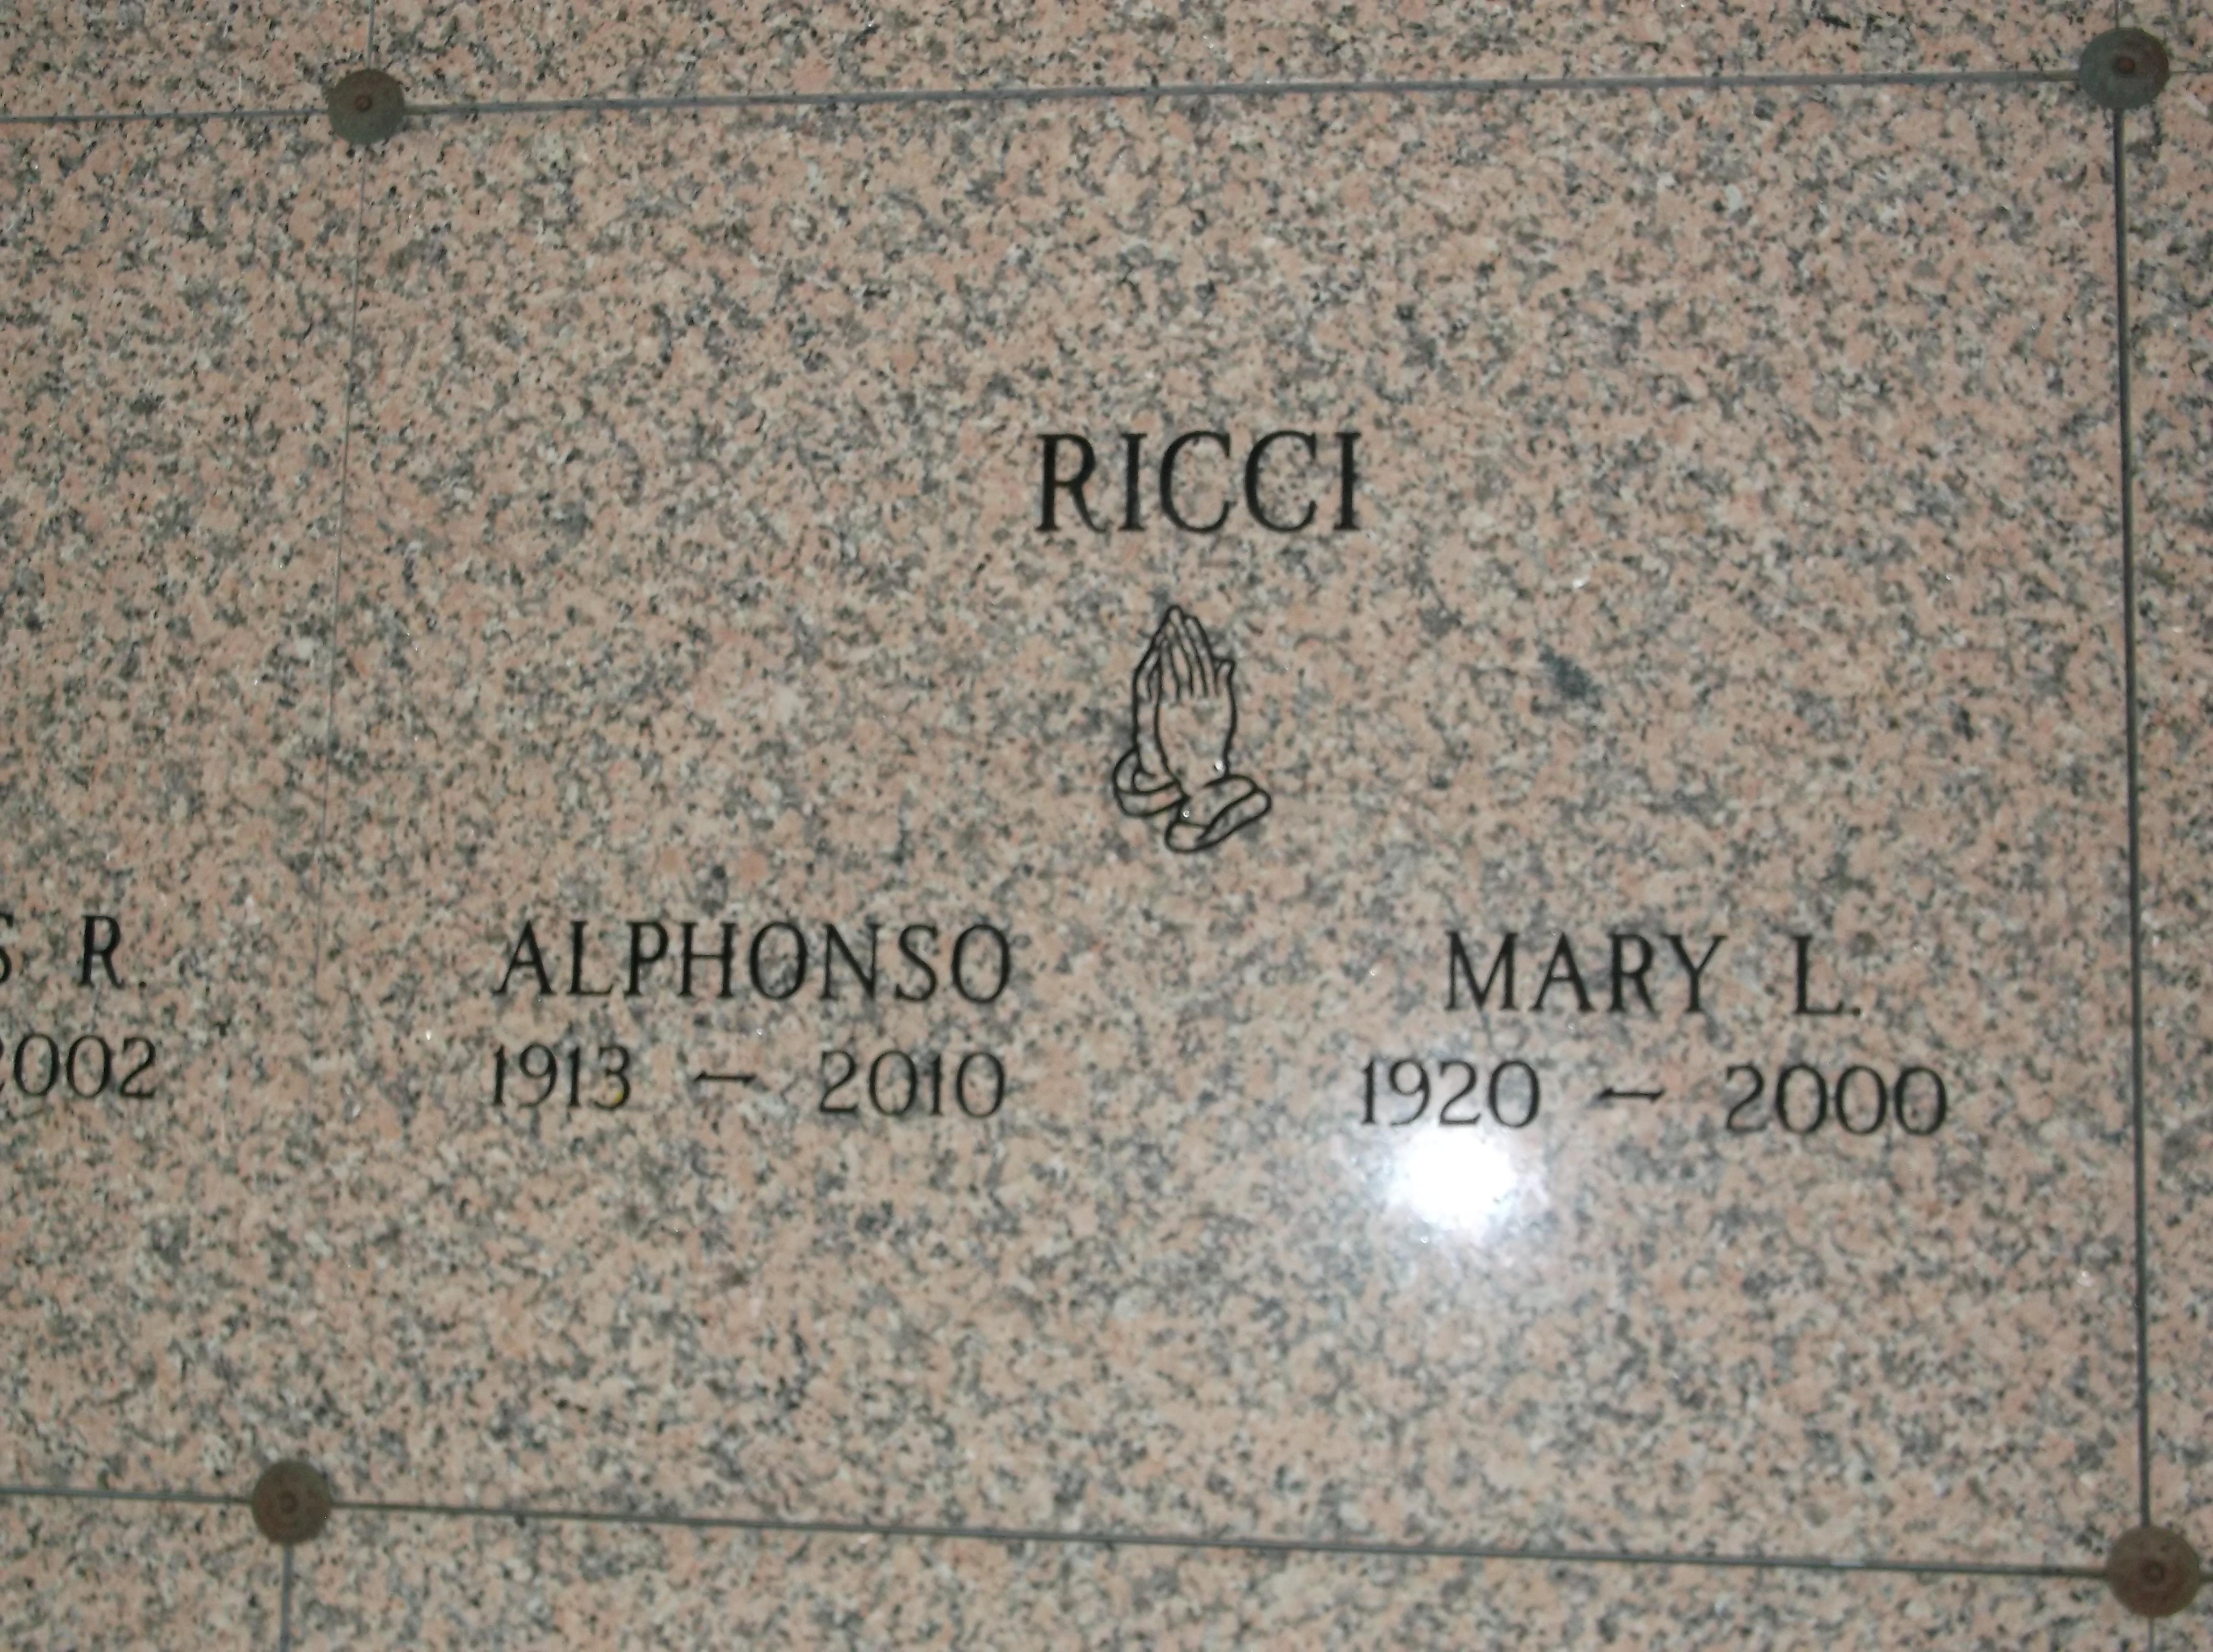 Alphonso Ricci